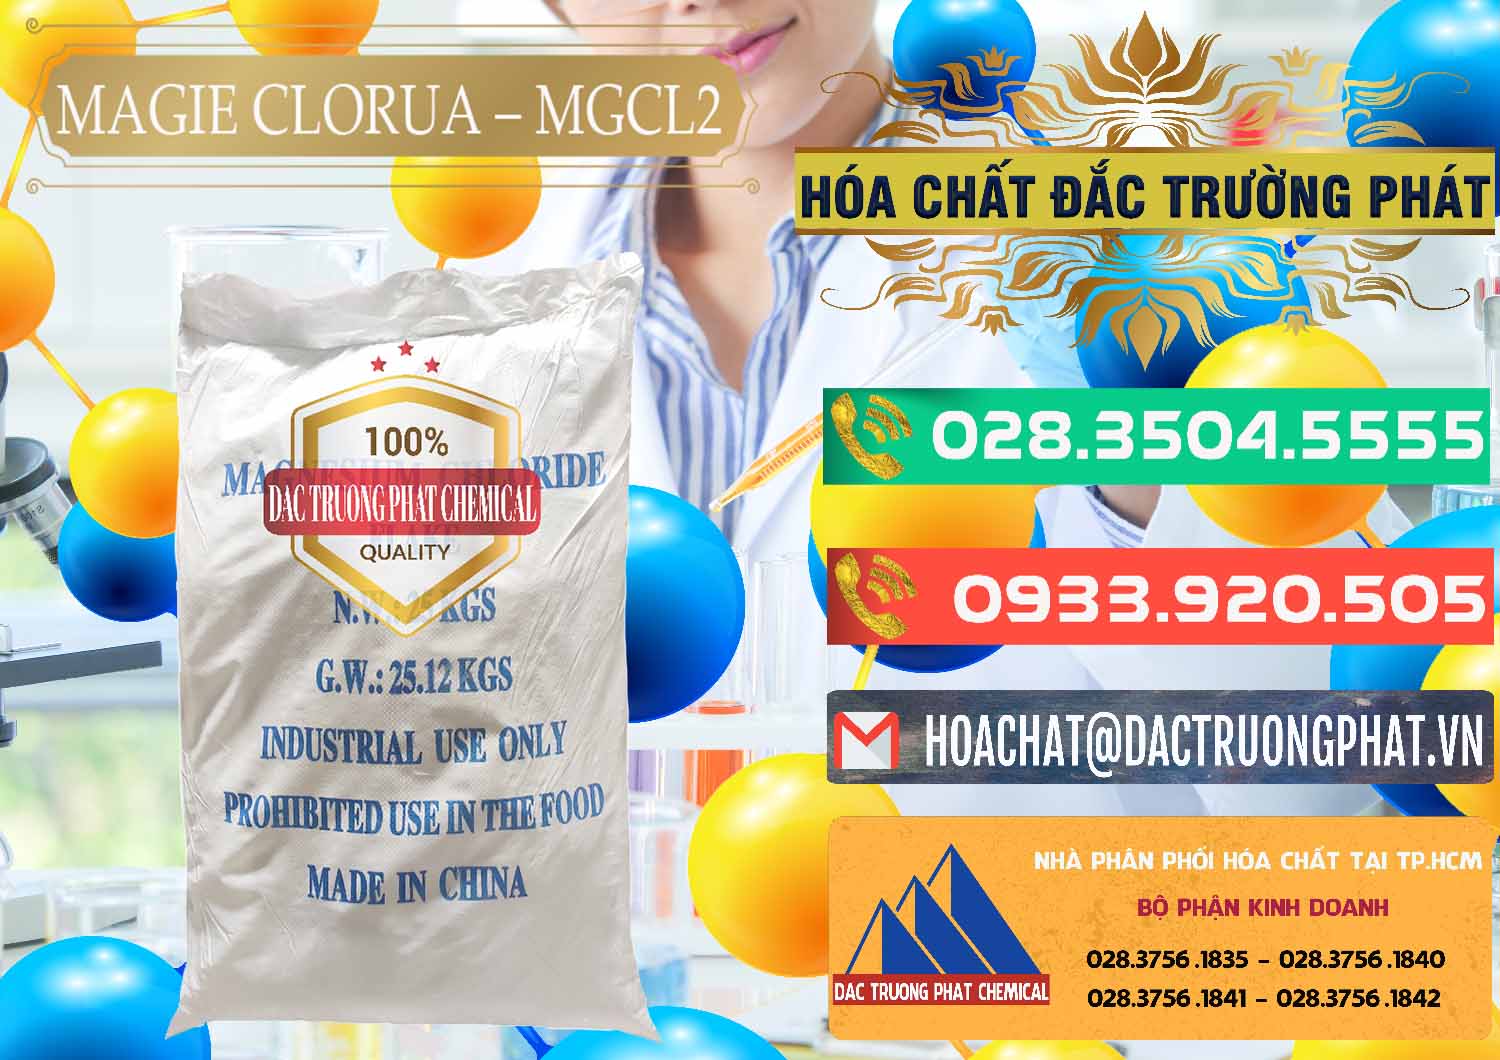 Nơi chuyên cung cấp và bán Magie Clorua – MGCL2 96% Dạng Vảy Trung Quốc China - 0091 - Công ty cung cấp - phân phối hóa chất tại TP.HCM - congtyhoachat.com.vn